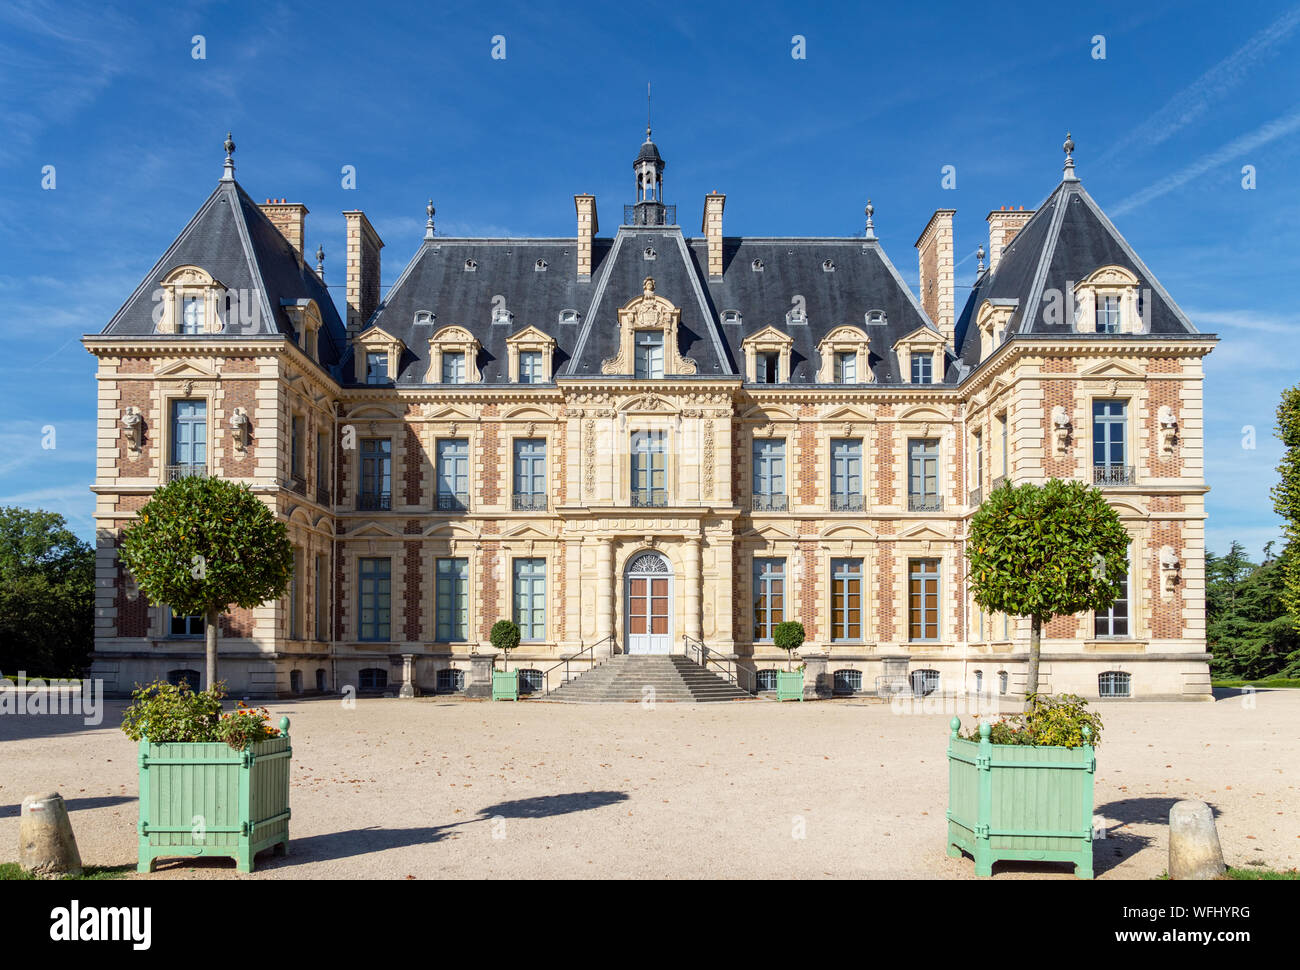 Entrance to Chateau de Sceaux - Hauts-de-Seine, France Stock Photo